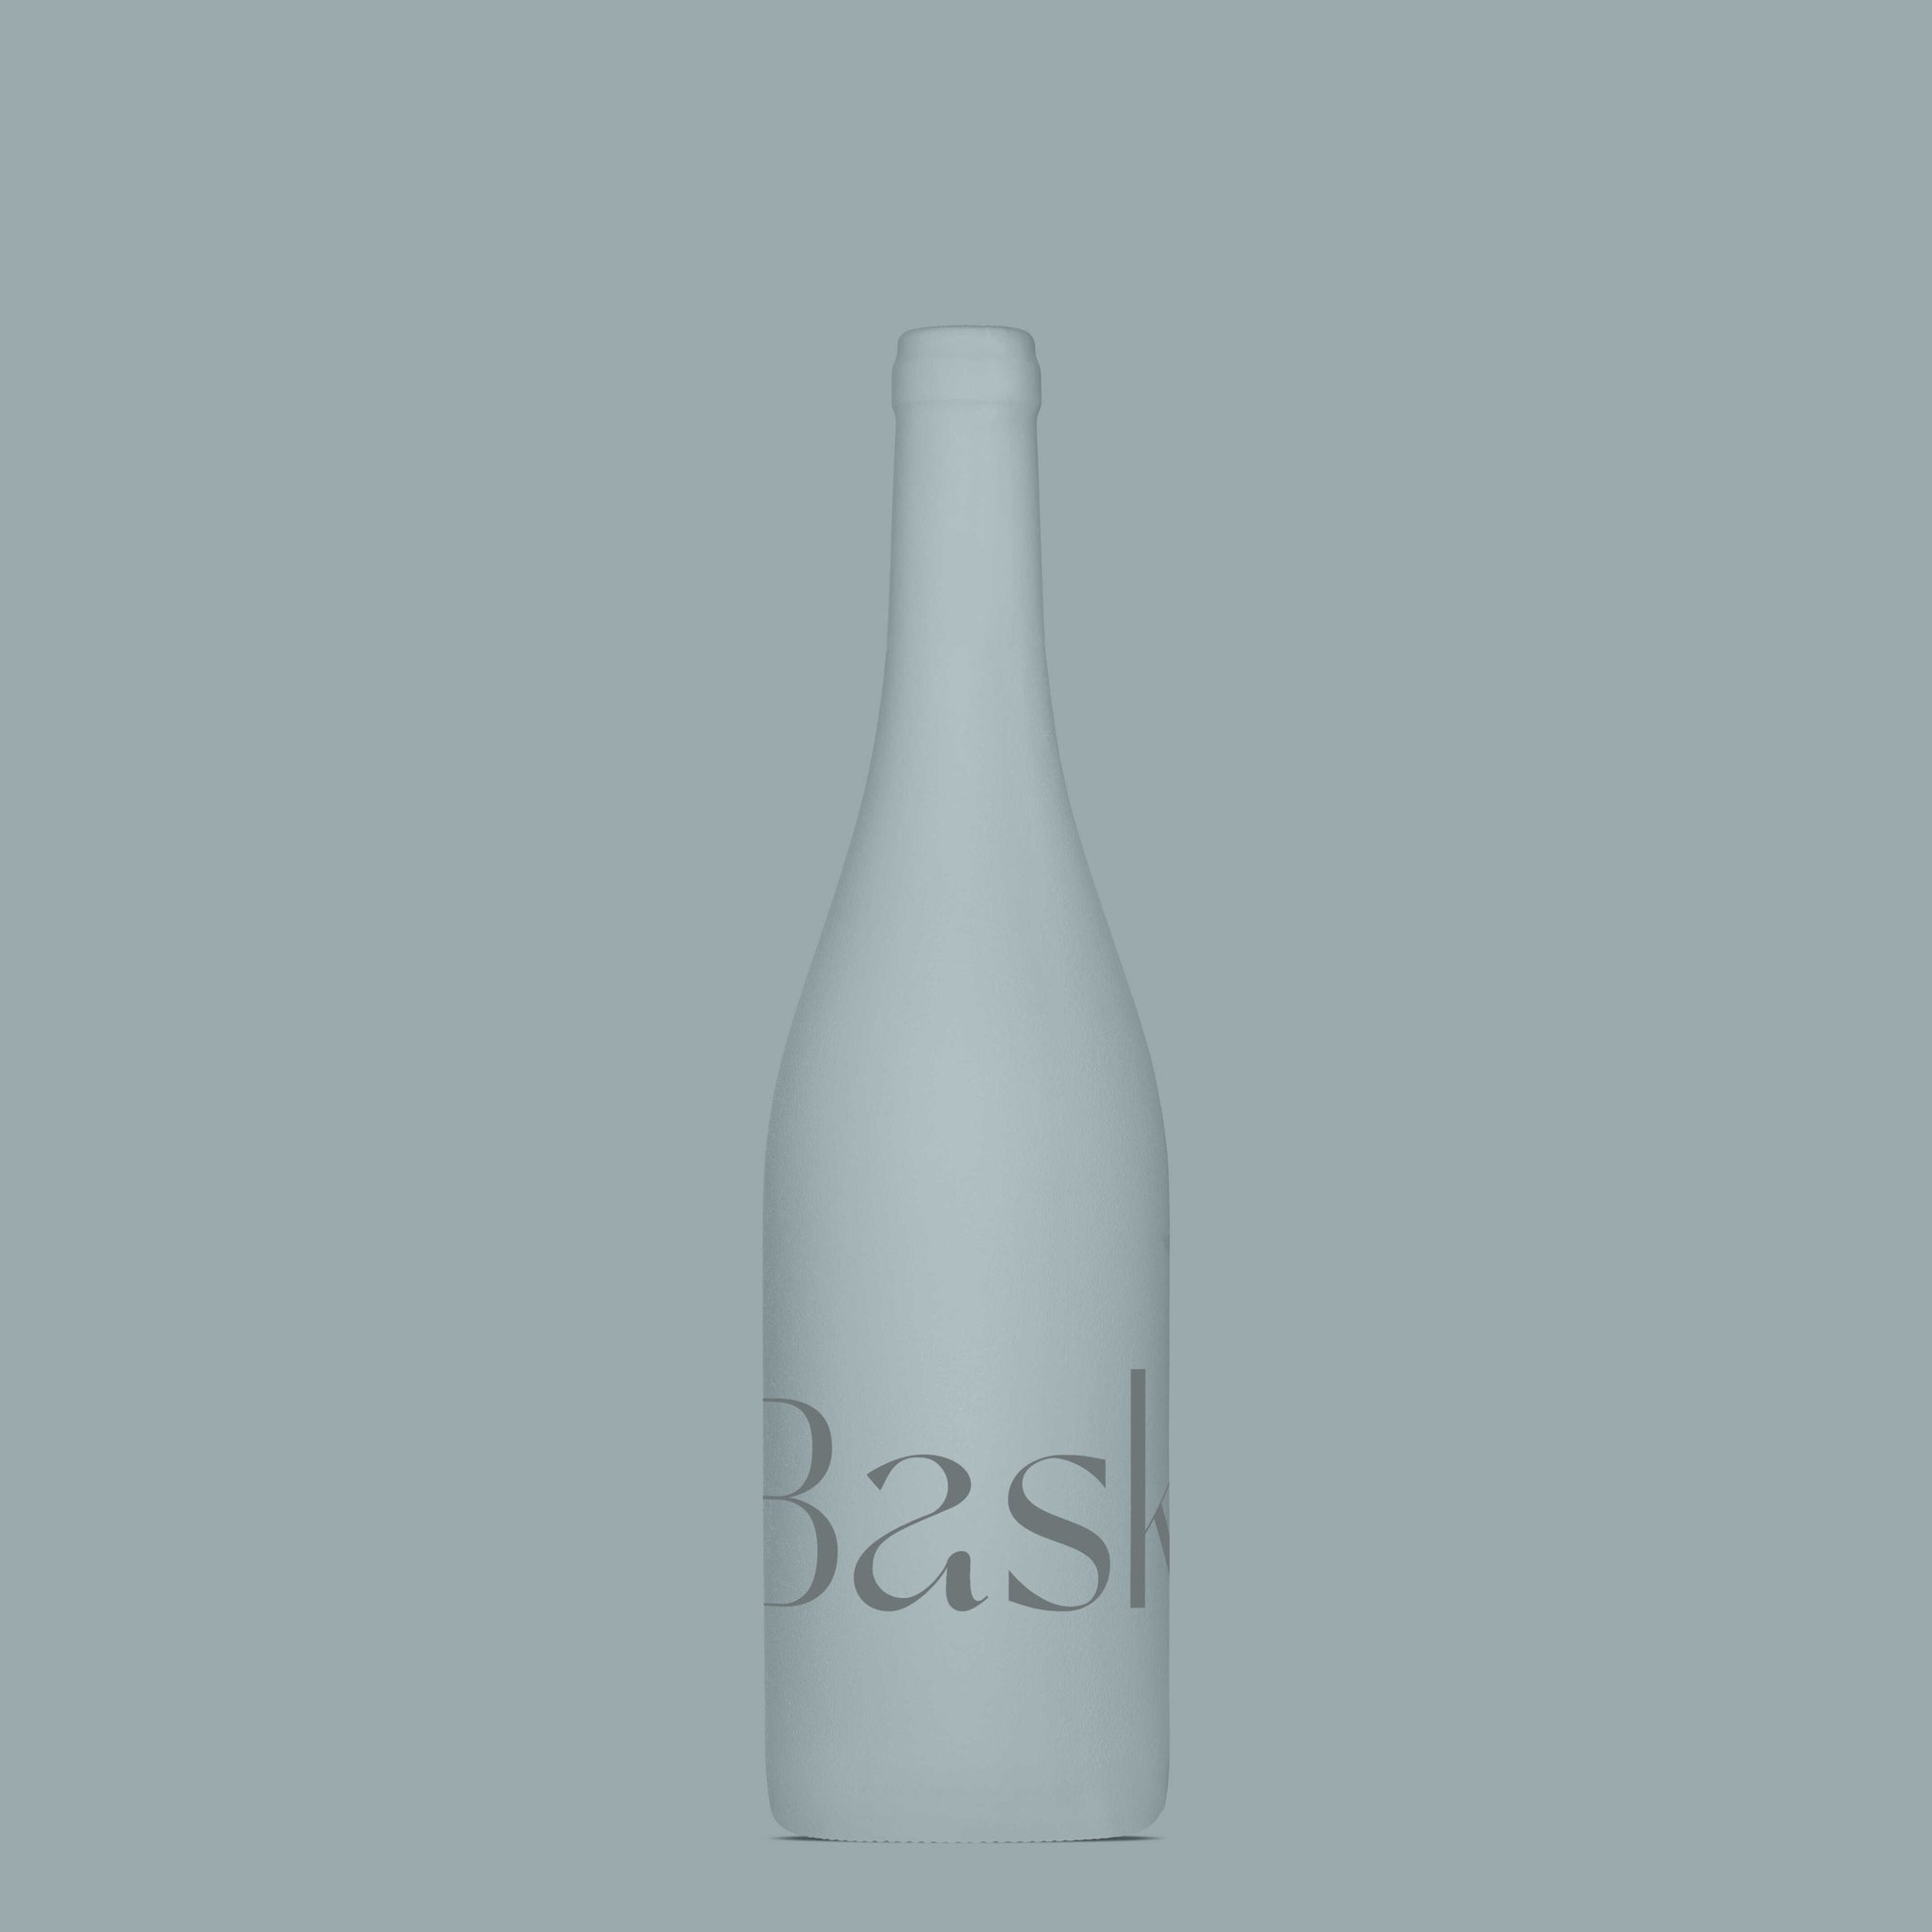 Ceramic Wine Bottle Mockup - Copal Studio Packaging Mockups For Designers